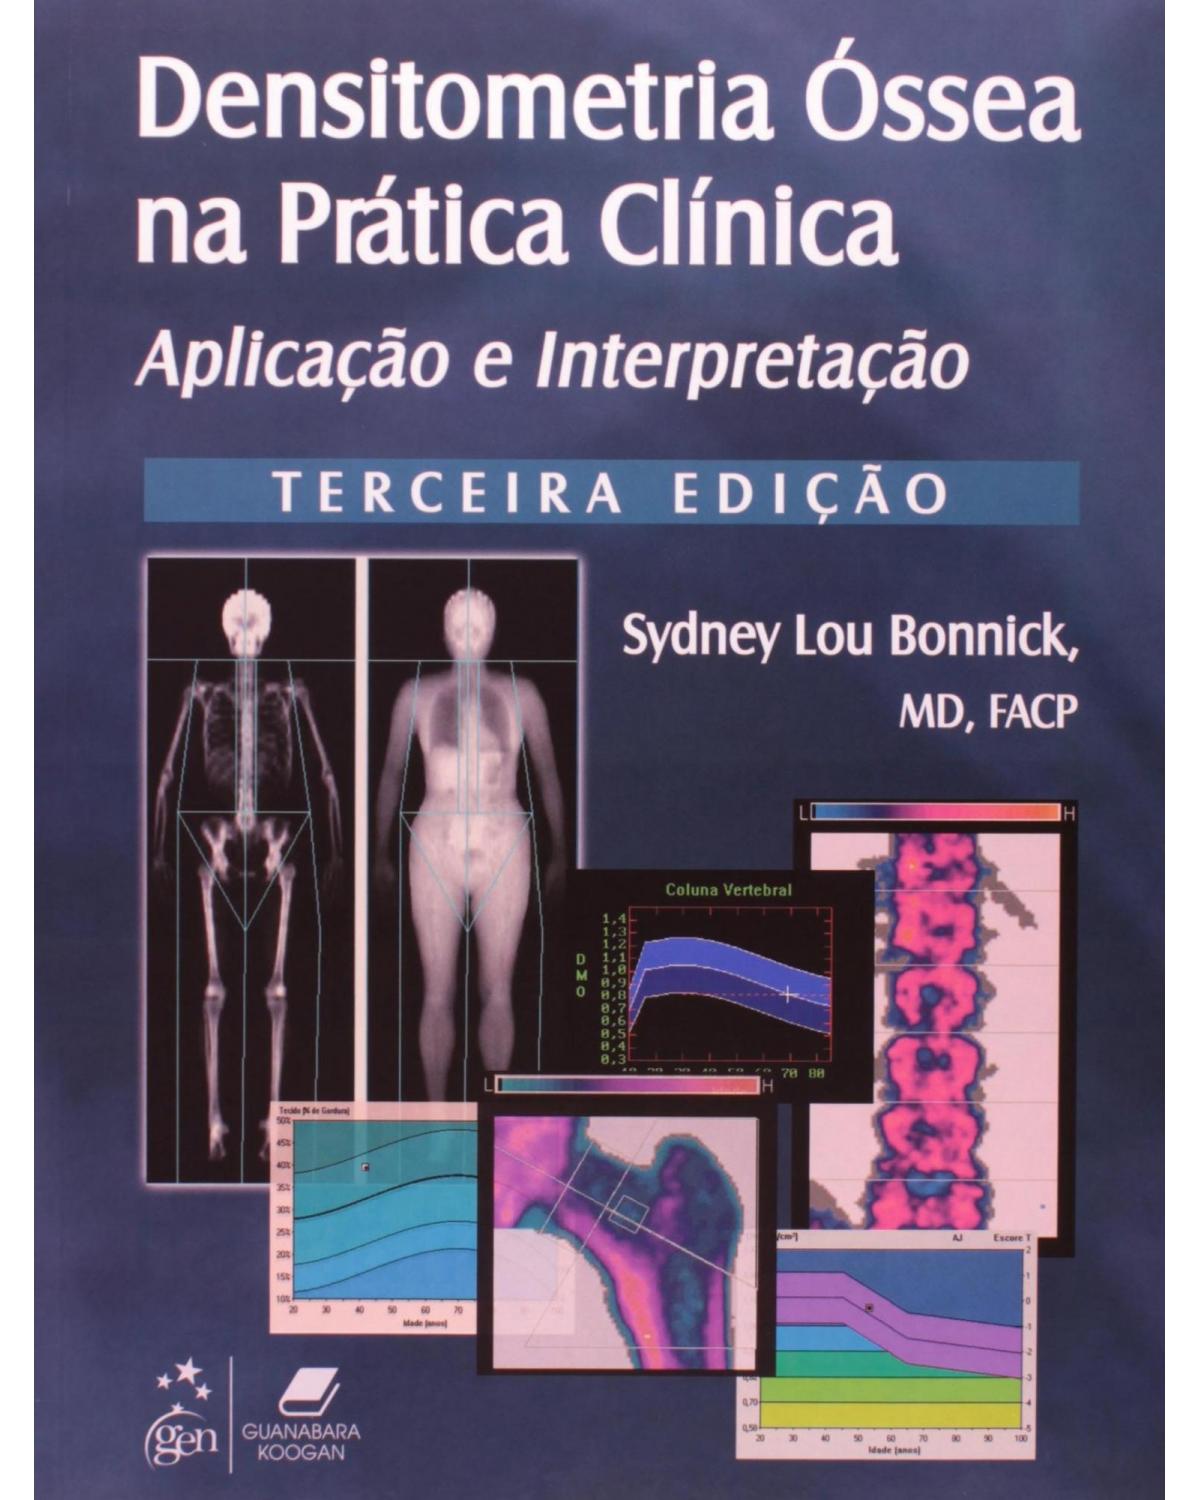 Densitometria óssea na prática clínica - Aplicação e interpretação - 3ª Edição | 2012